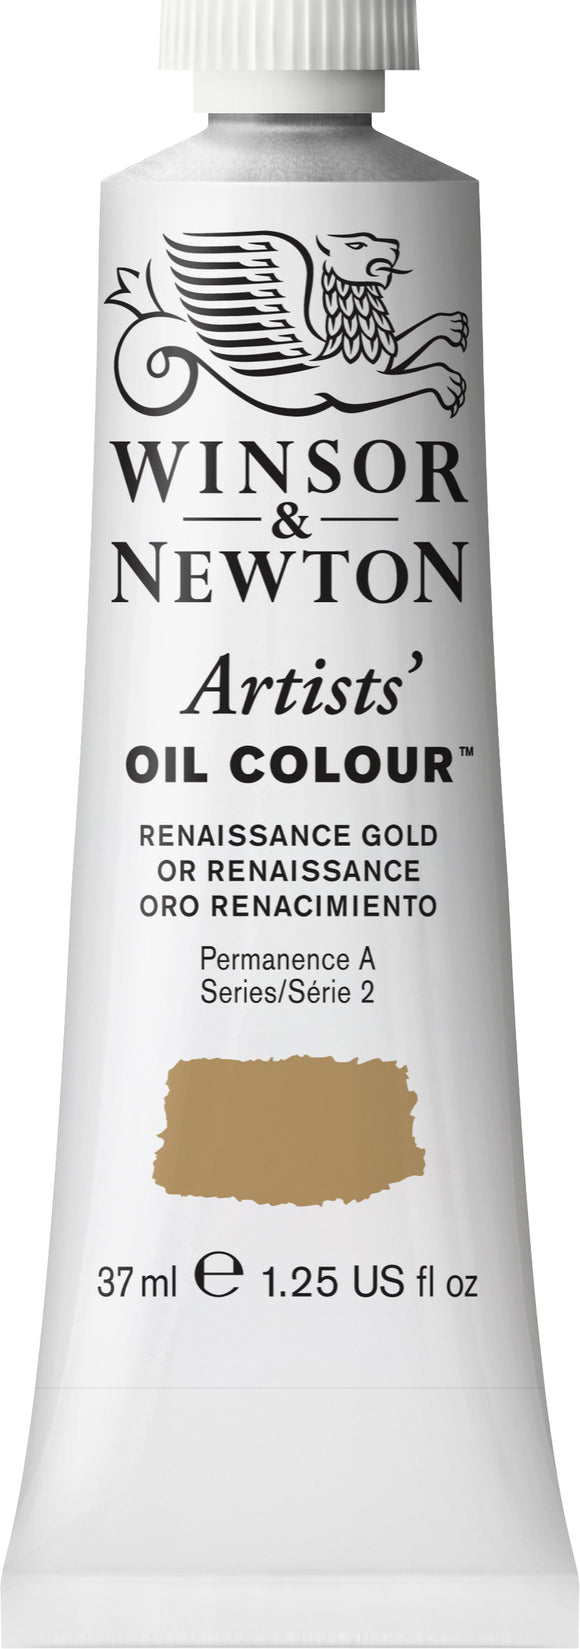 Winsor & Newton Artists Oil Color Renaissance Gold 37Ml